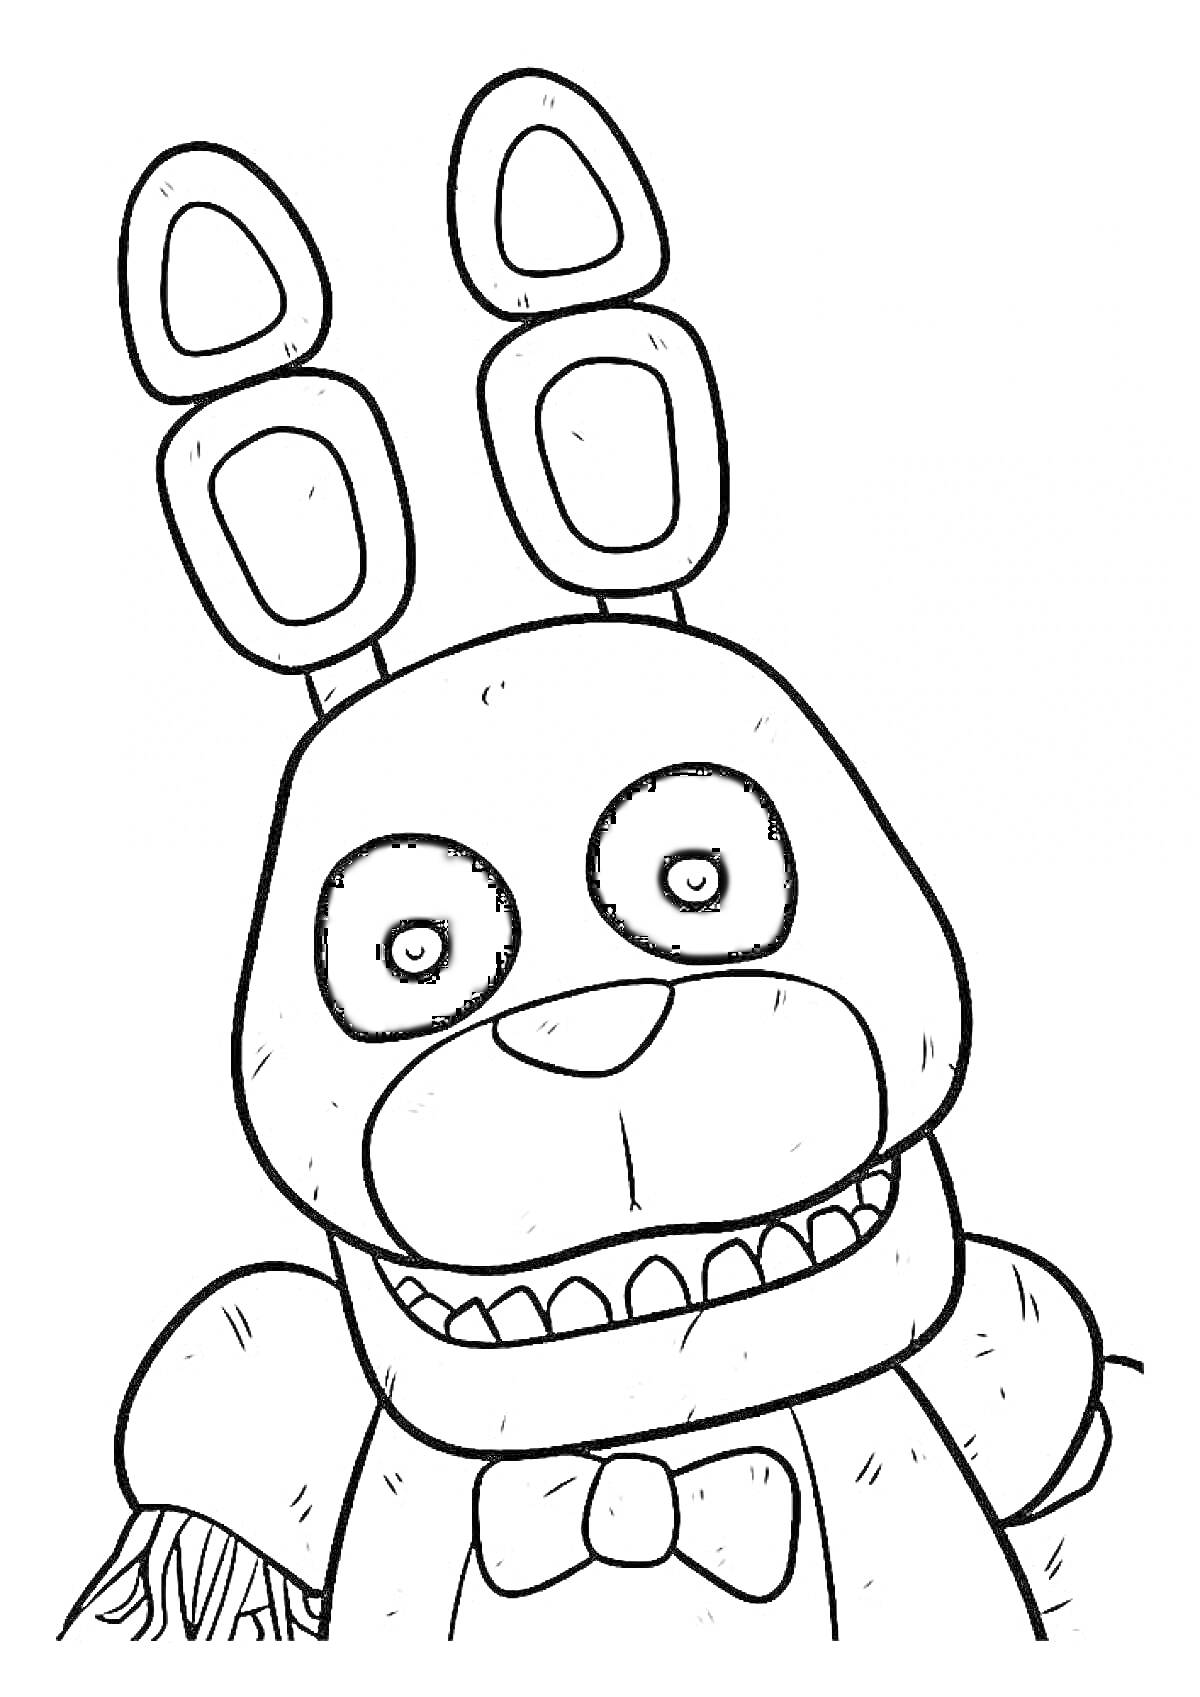 Раскраска Аниматроник-кролик с большими черными глазами, бантом и ушами